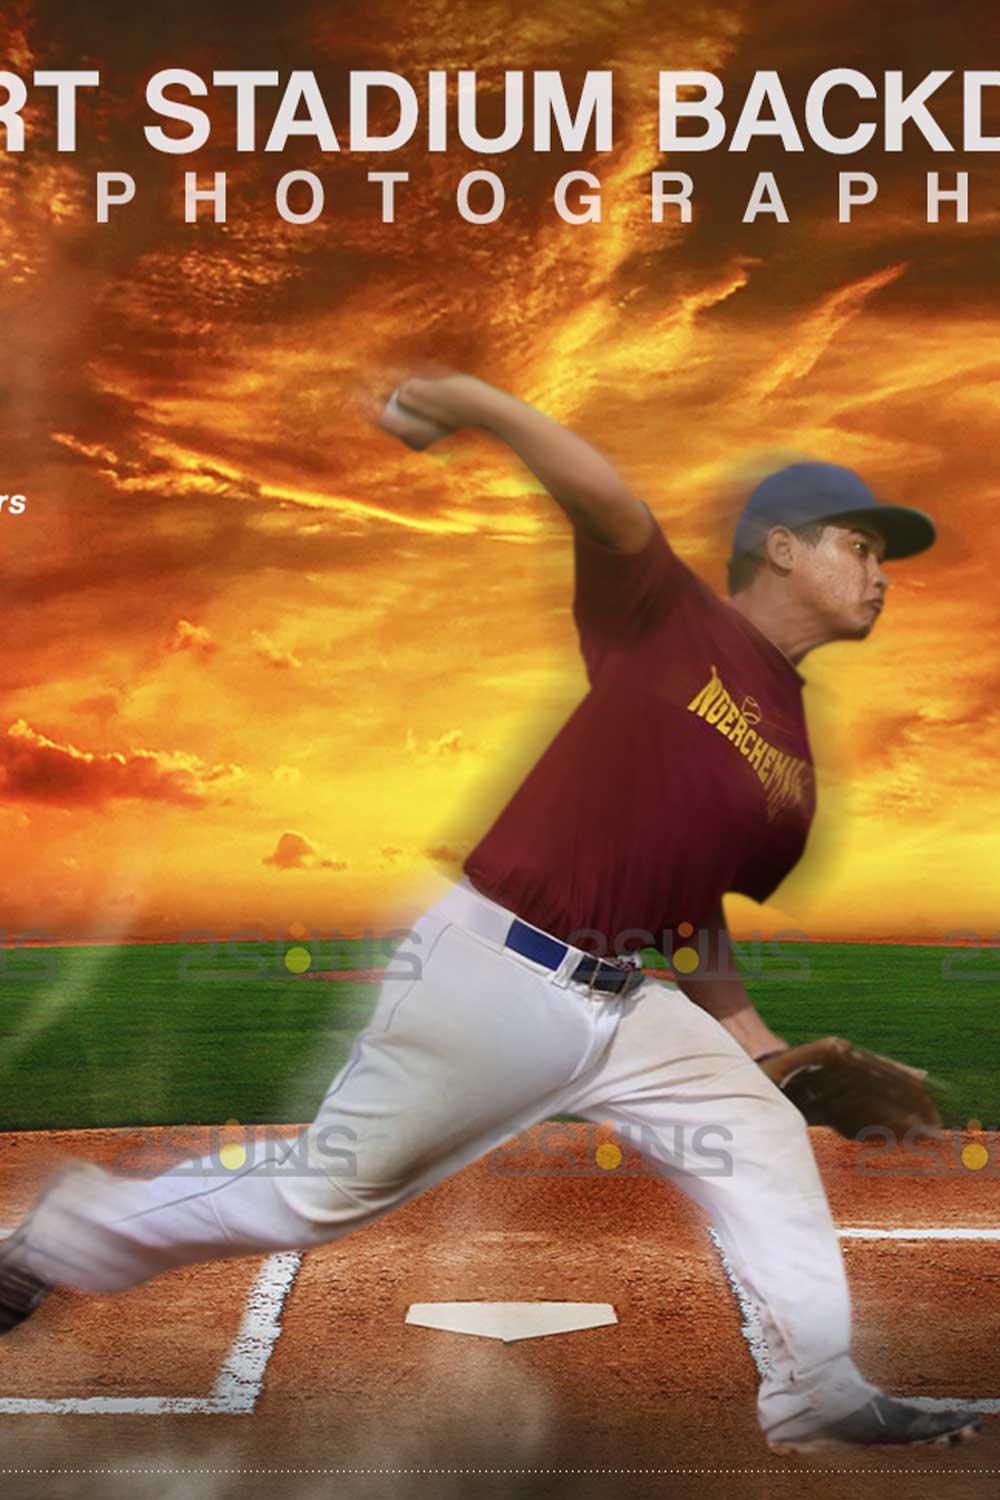 Stylish Baseball Backdrop Sports Digital Background Pinterest Image.